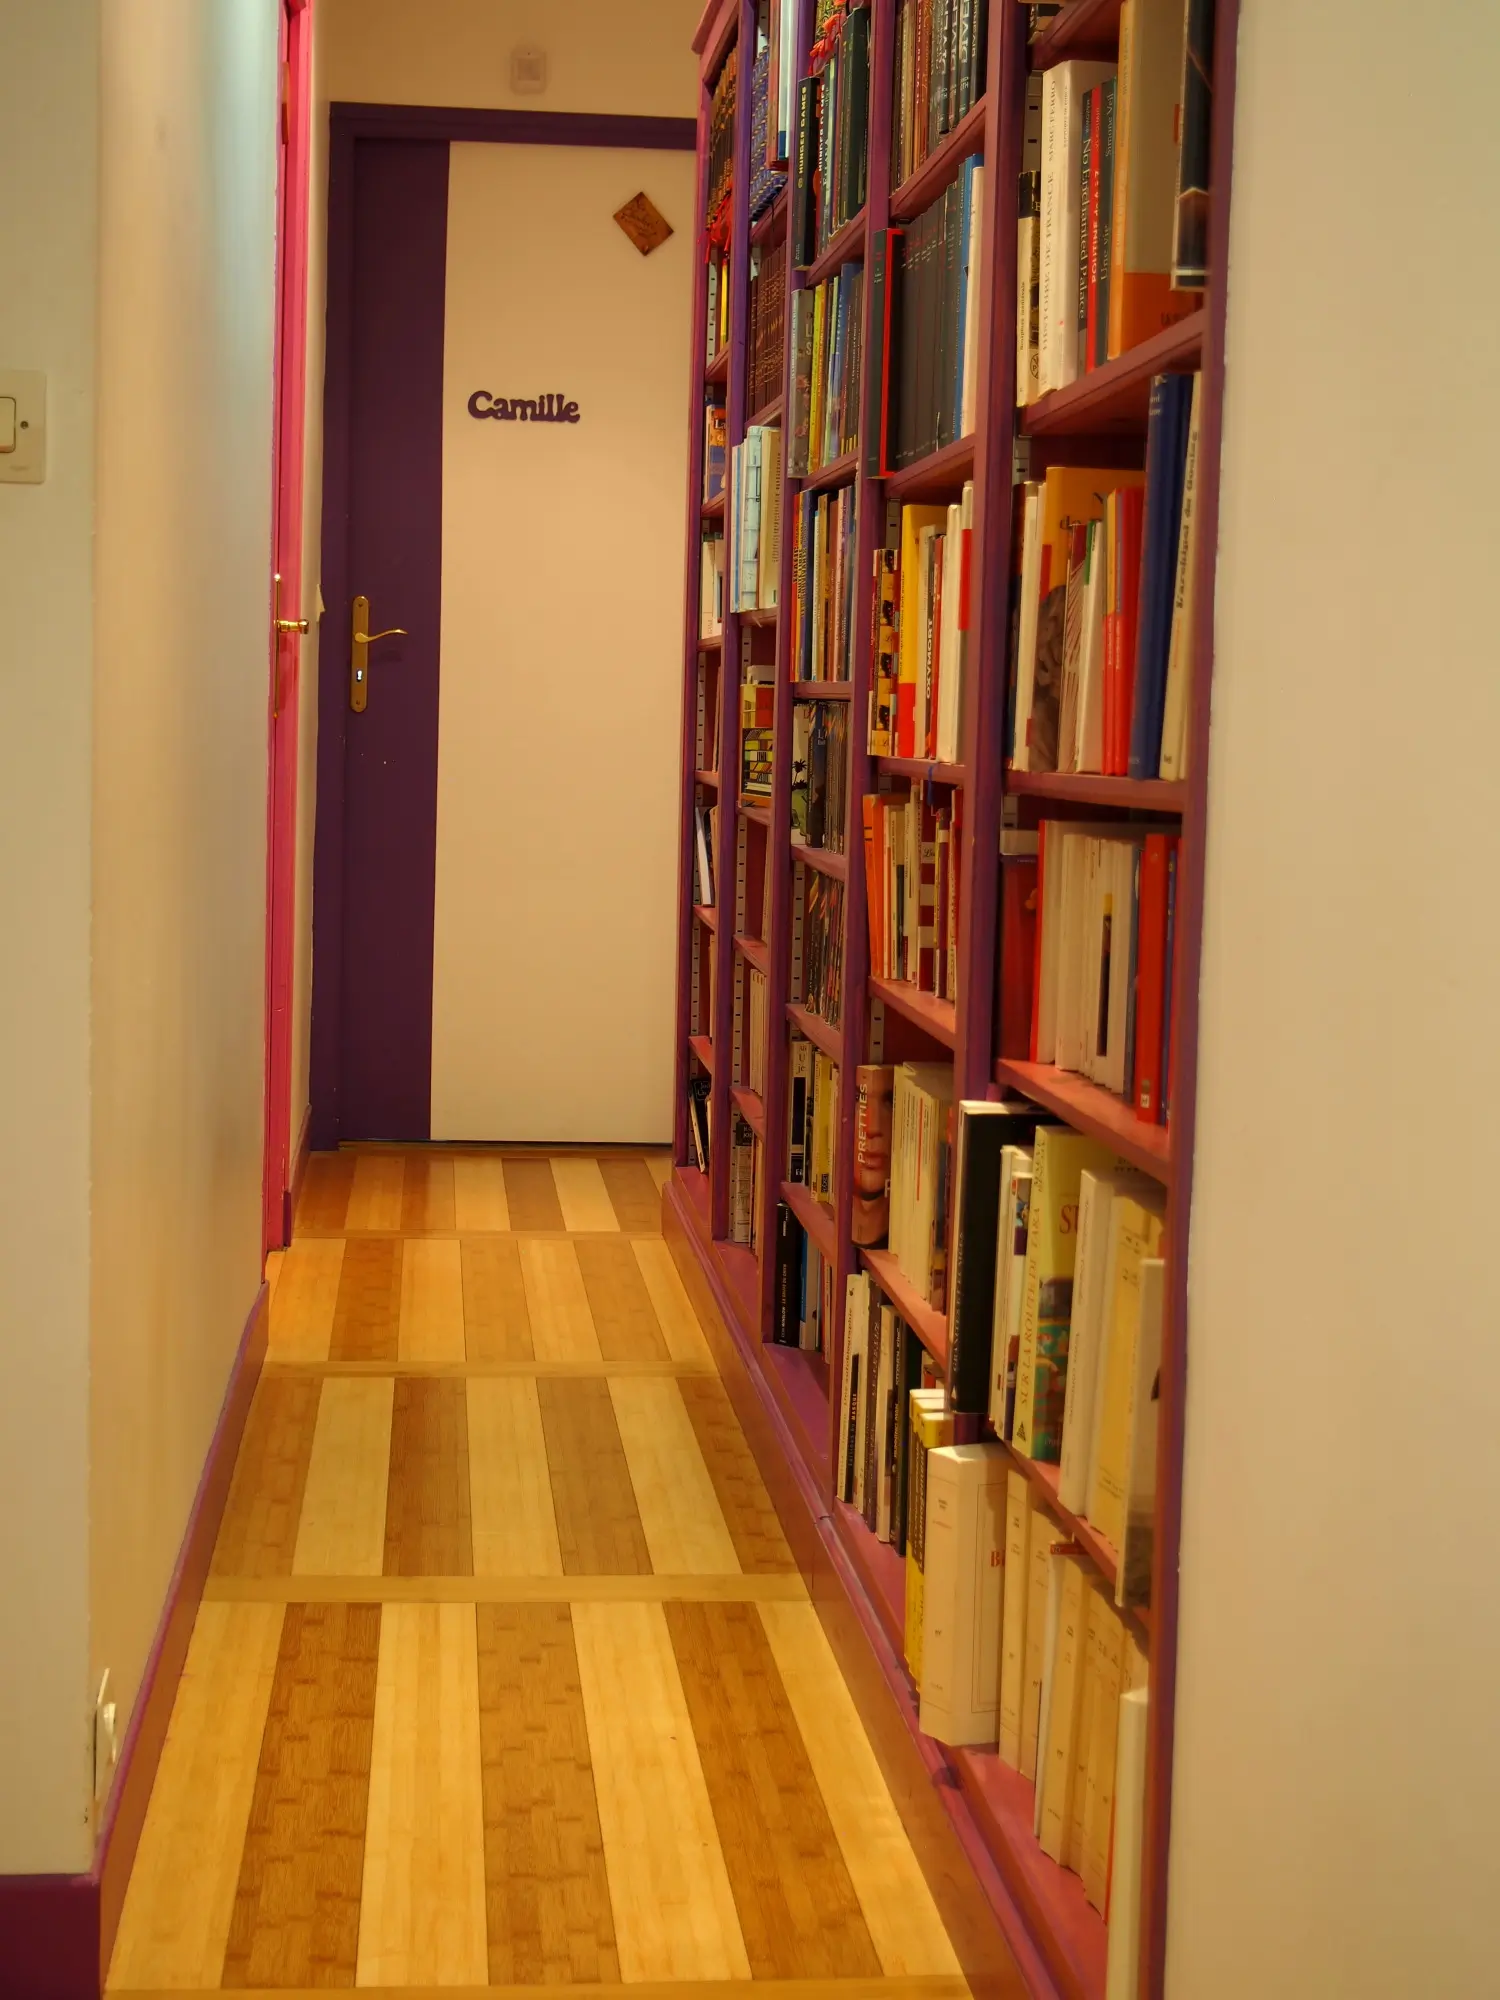 Grande bibliothèque dans un couloir (2009)